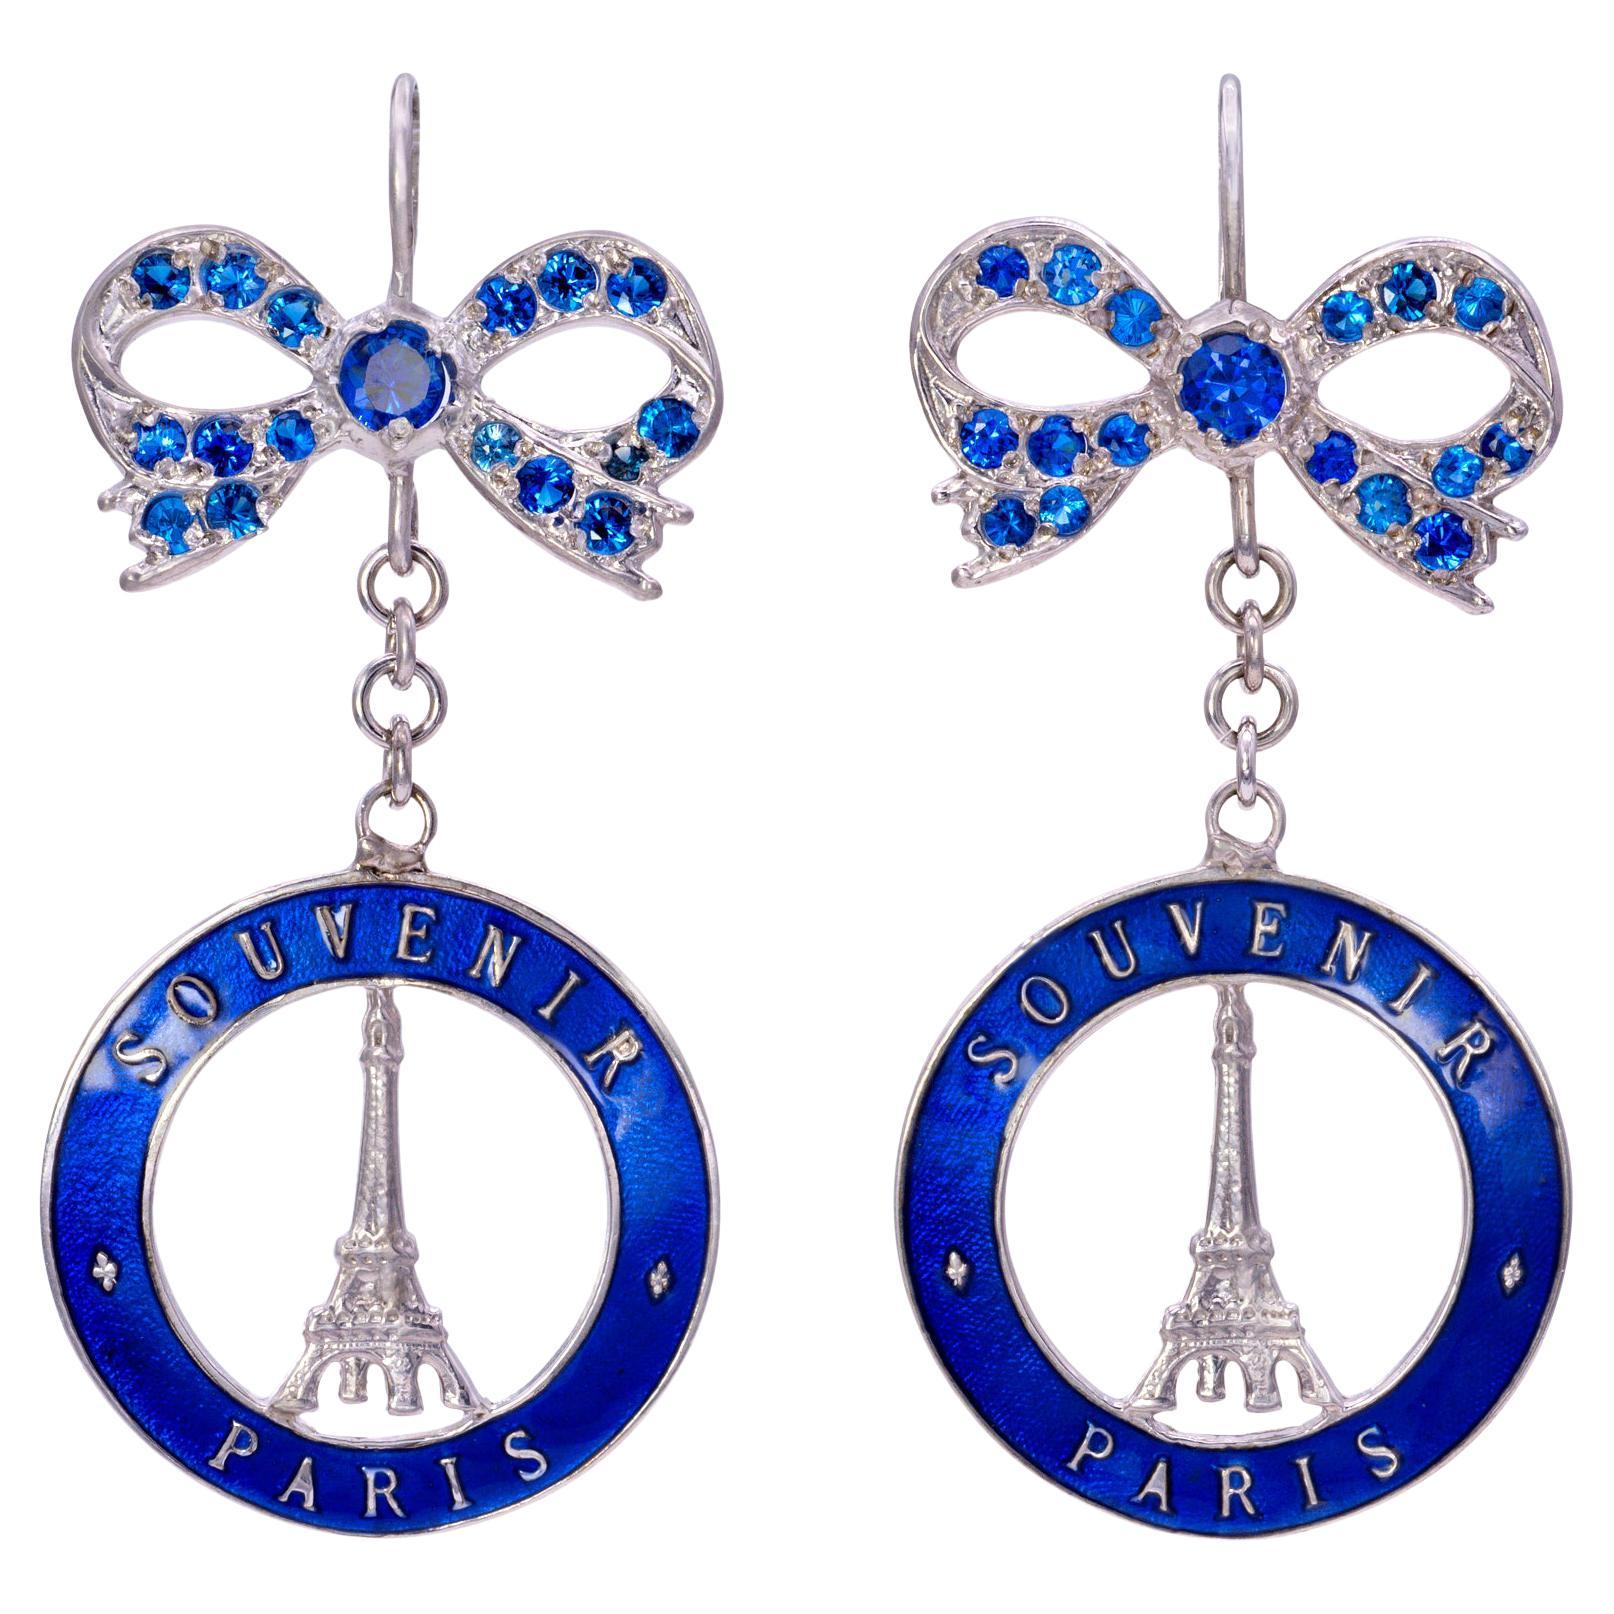 Souvenir de Paris Earrings with Blue Swarovski Crystal bows For Sale